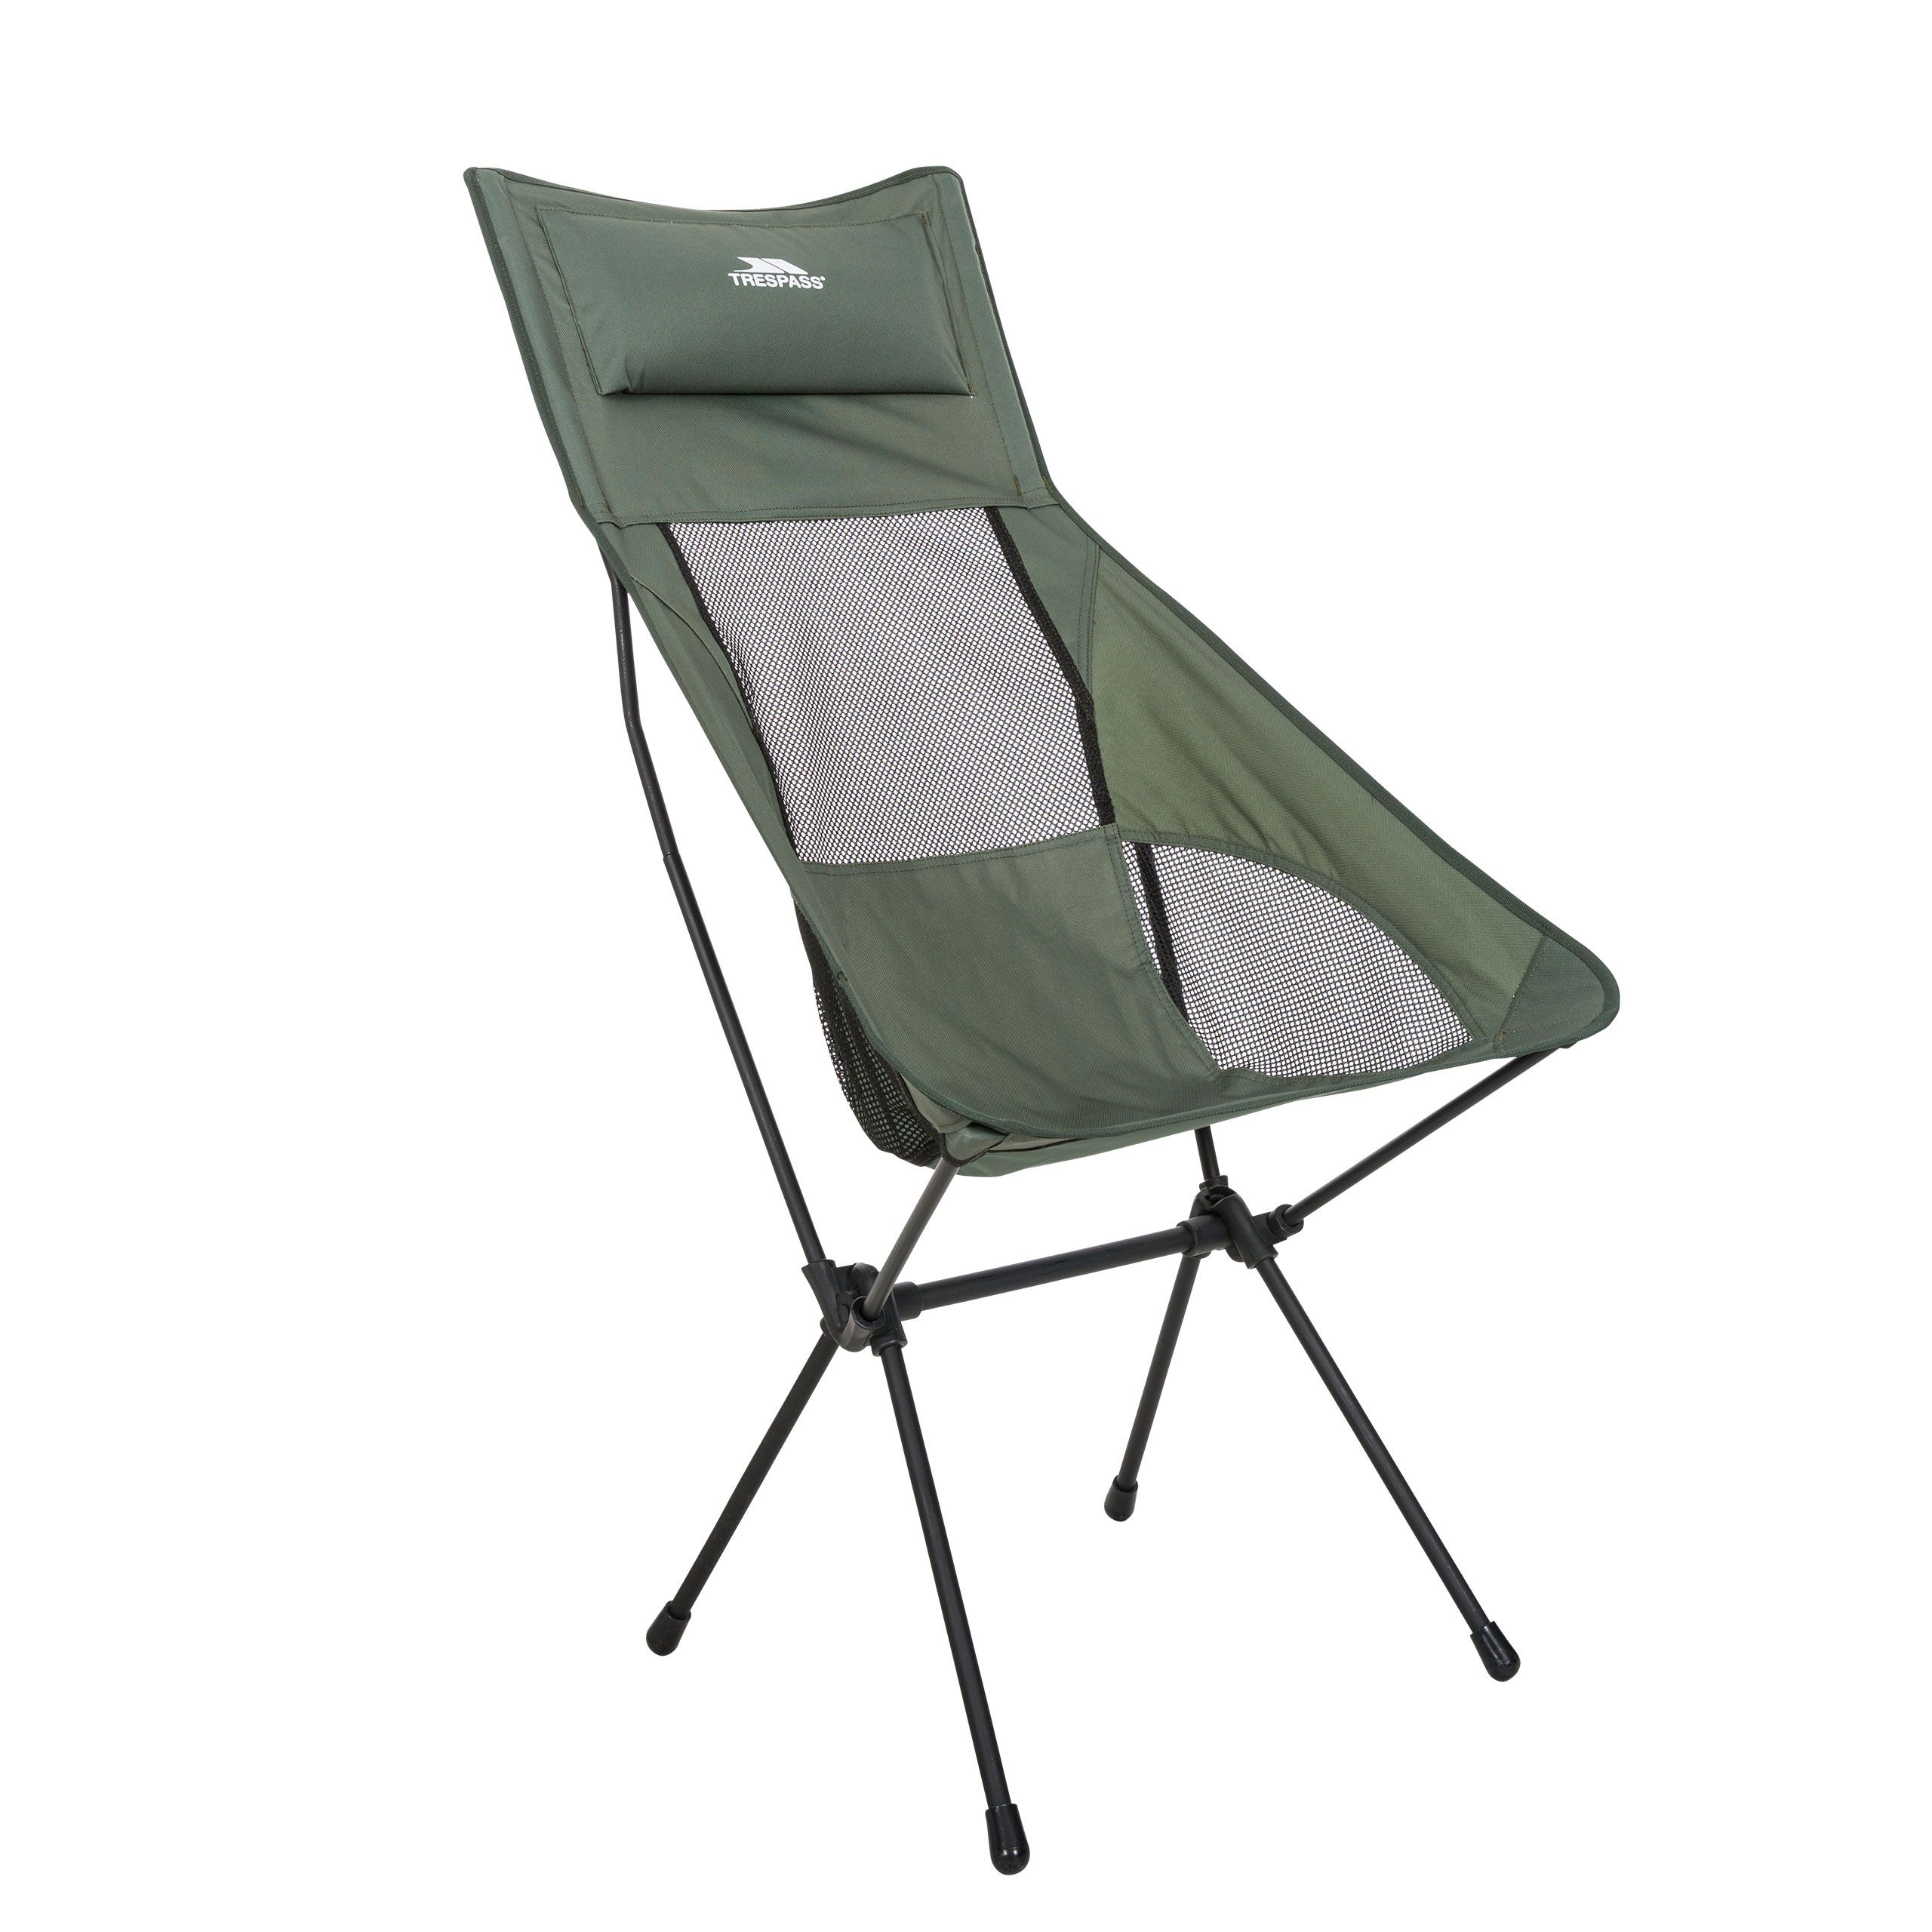 Trespass Tall Lightweight Camping Chair Roost